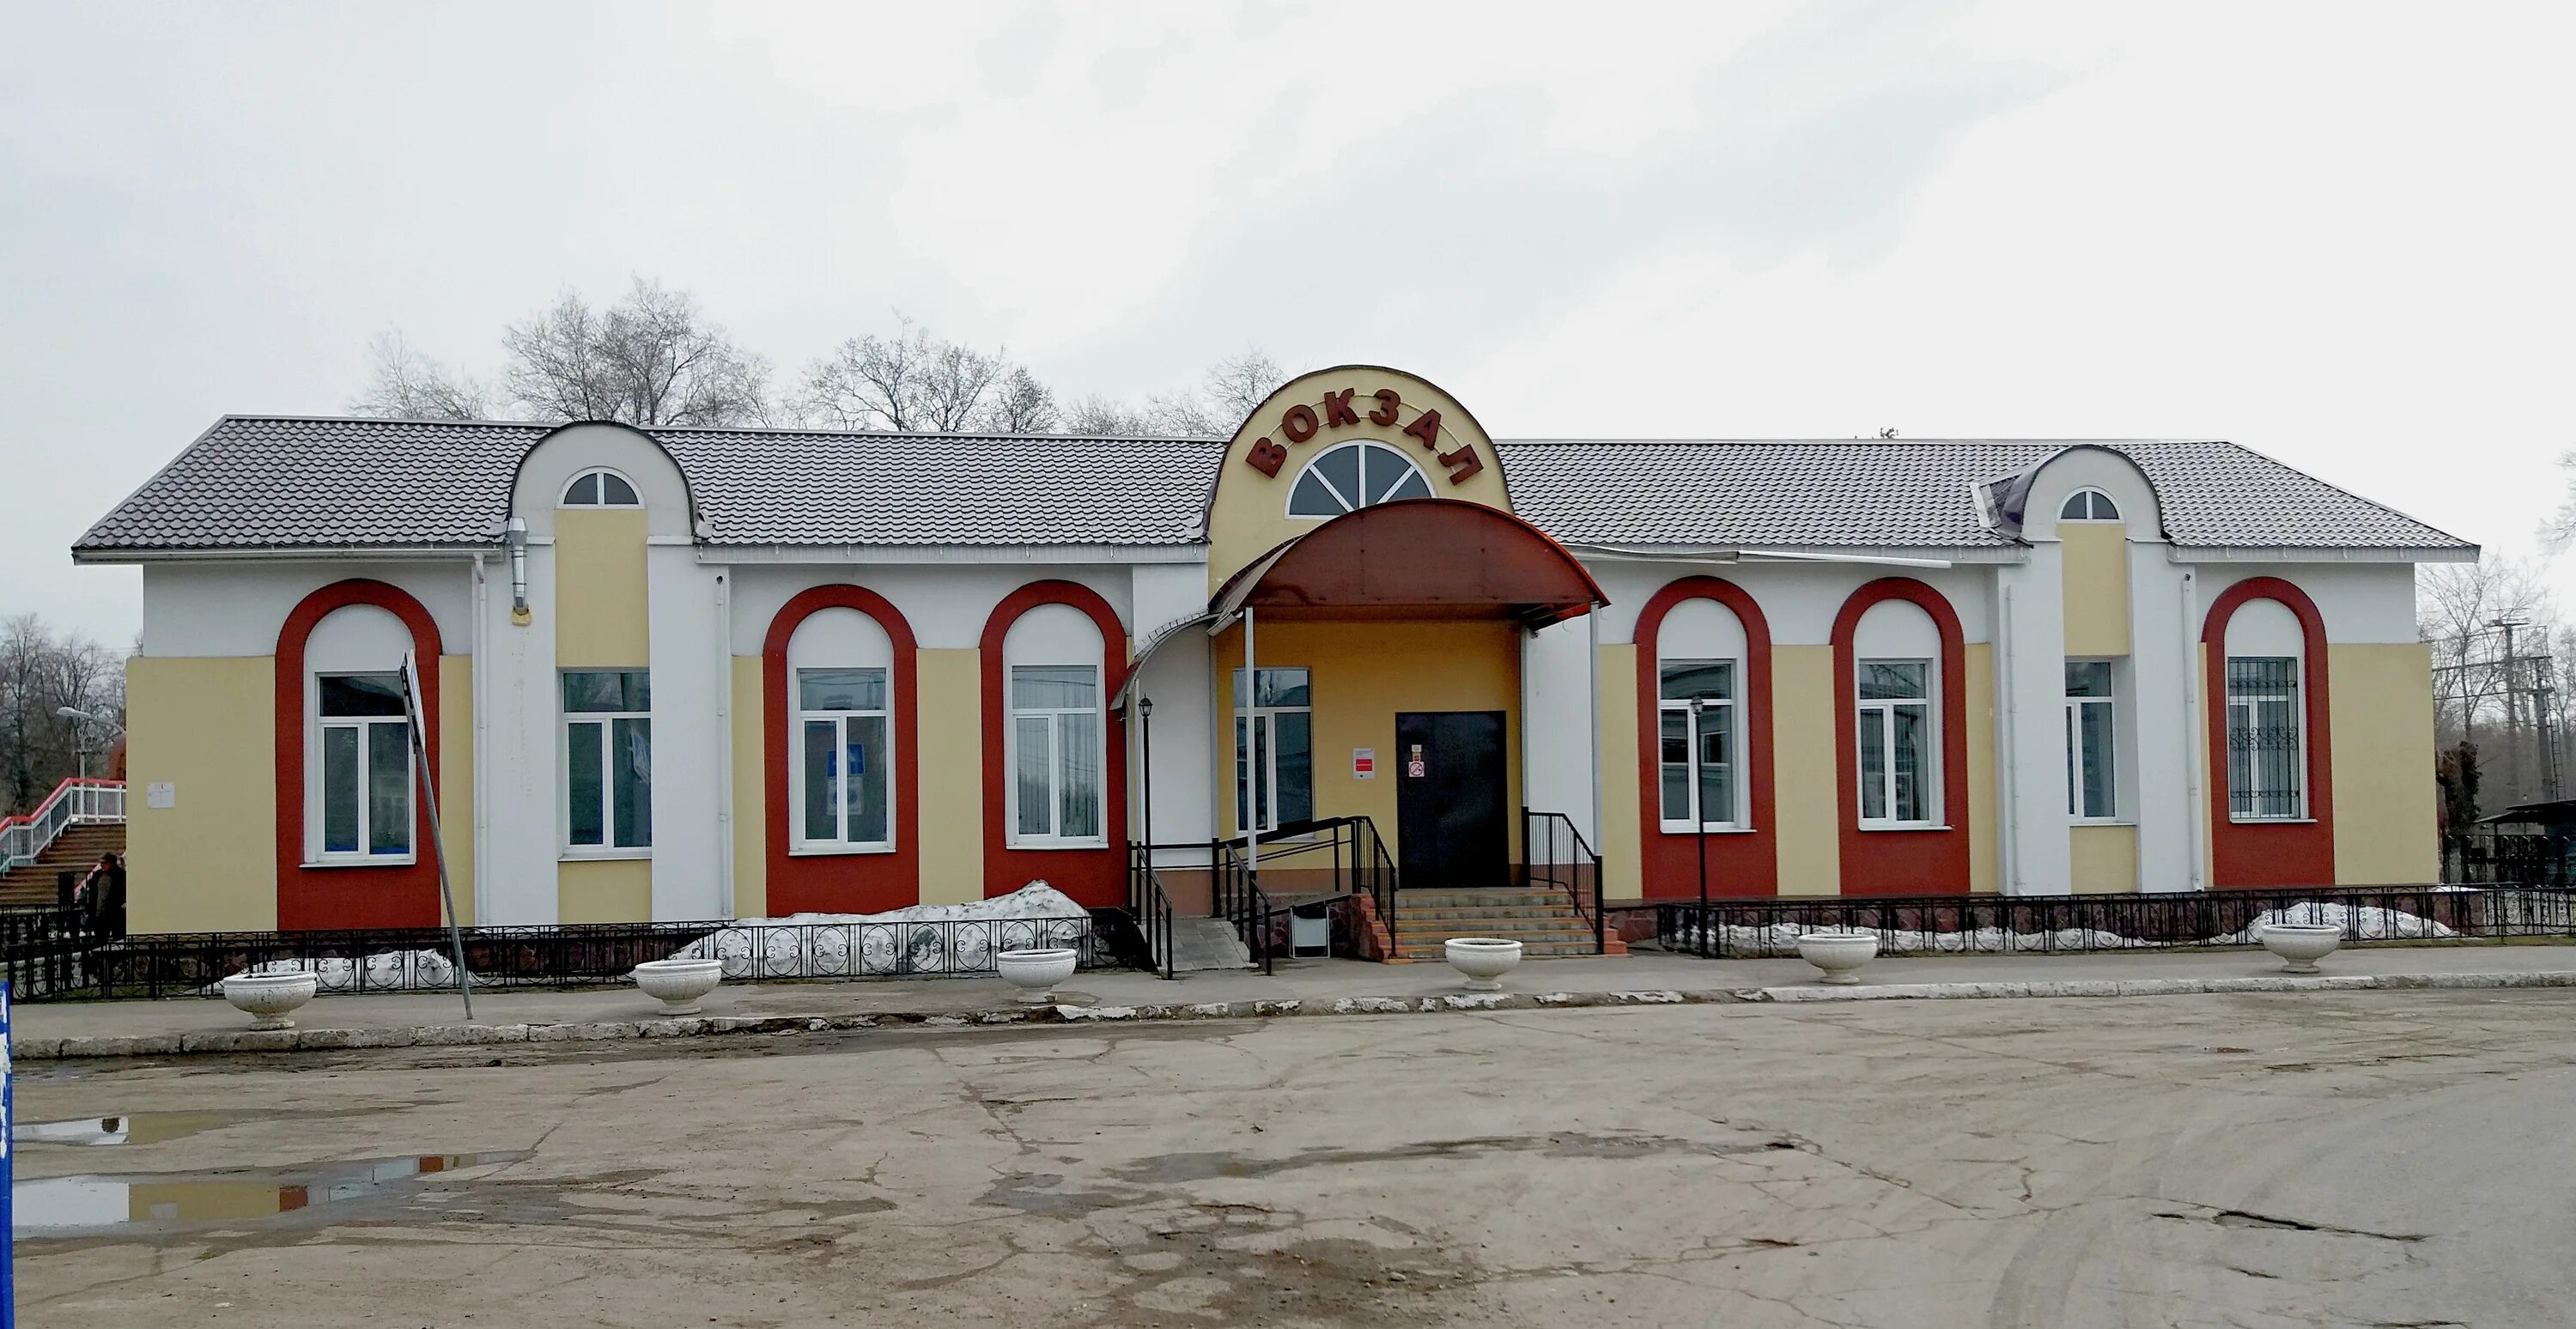 Работу верхняя терраса. Станция верхняя терраса Ульяновск. Вокзал верхняя терраса Ульяновск. Верхняя терраса Ульяновск ЖД станция. ЖД Верхние террасы.